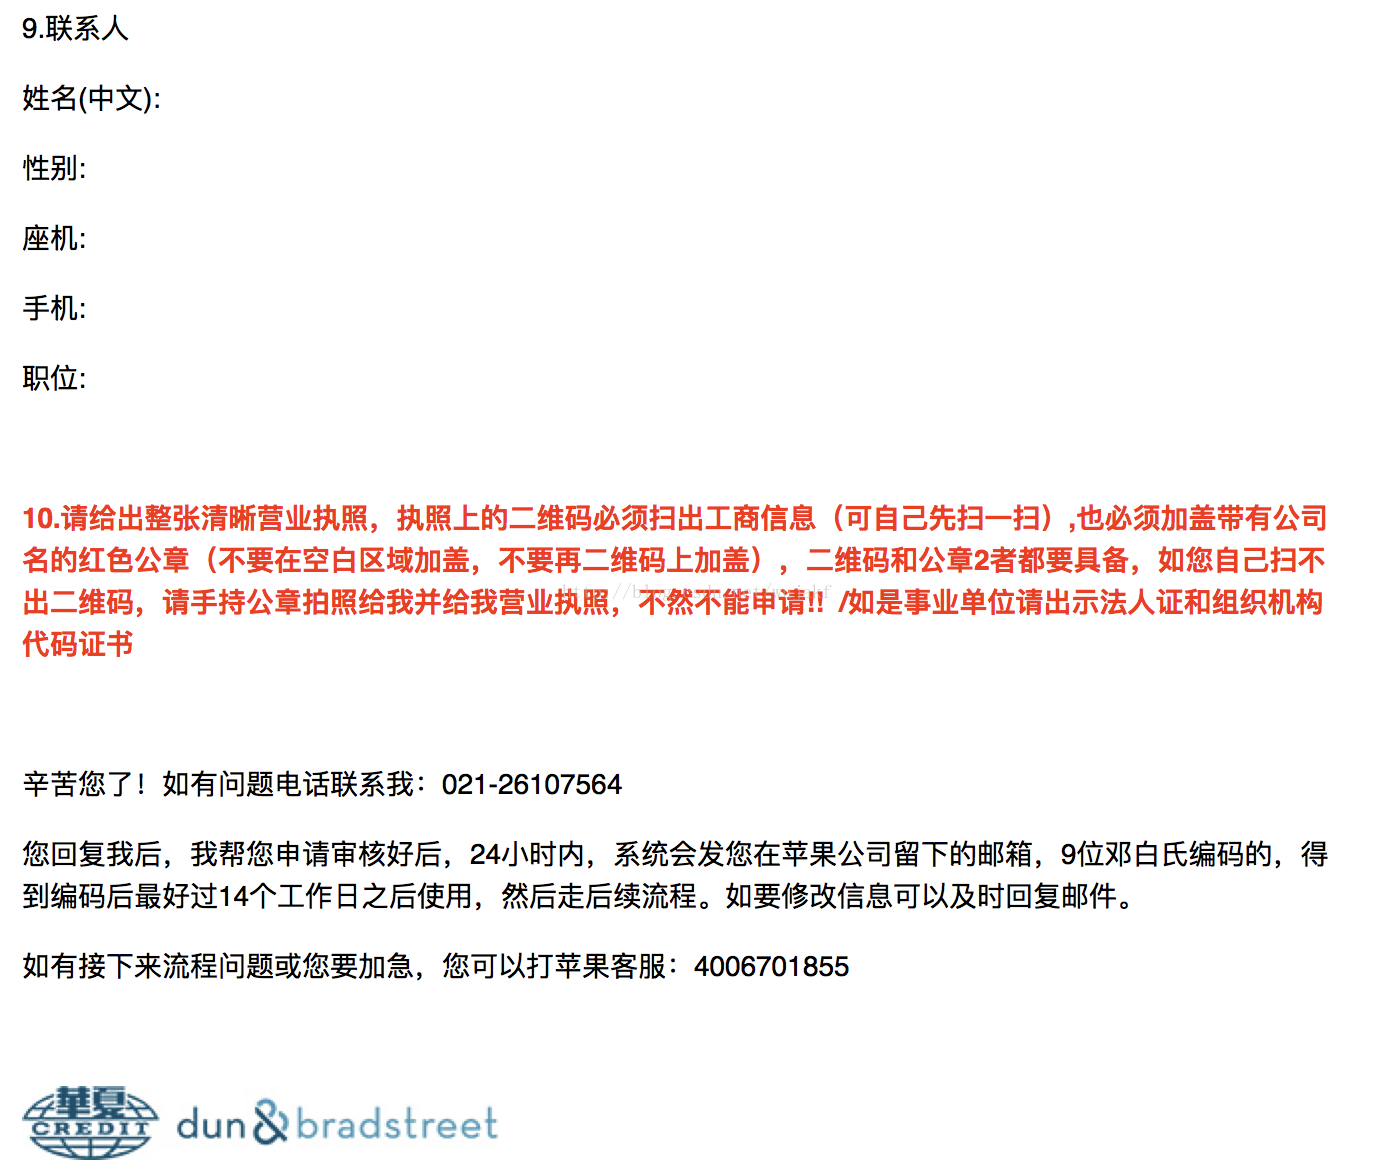 邓白氏编码申请流程 最新 Wuwufq的博客 程序员资料 邓白氏编码申请流程 程序员资料